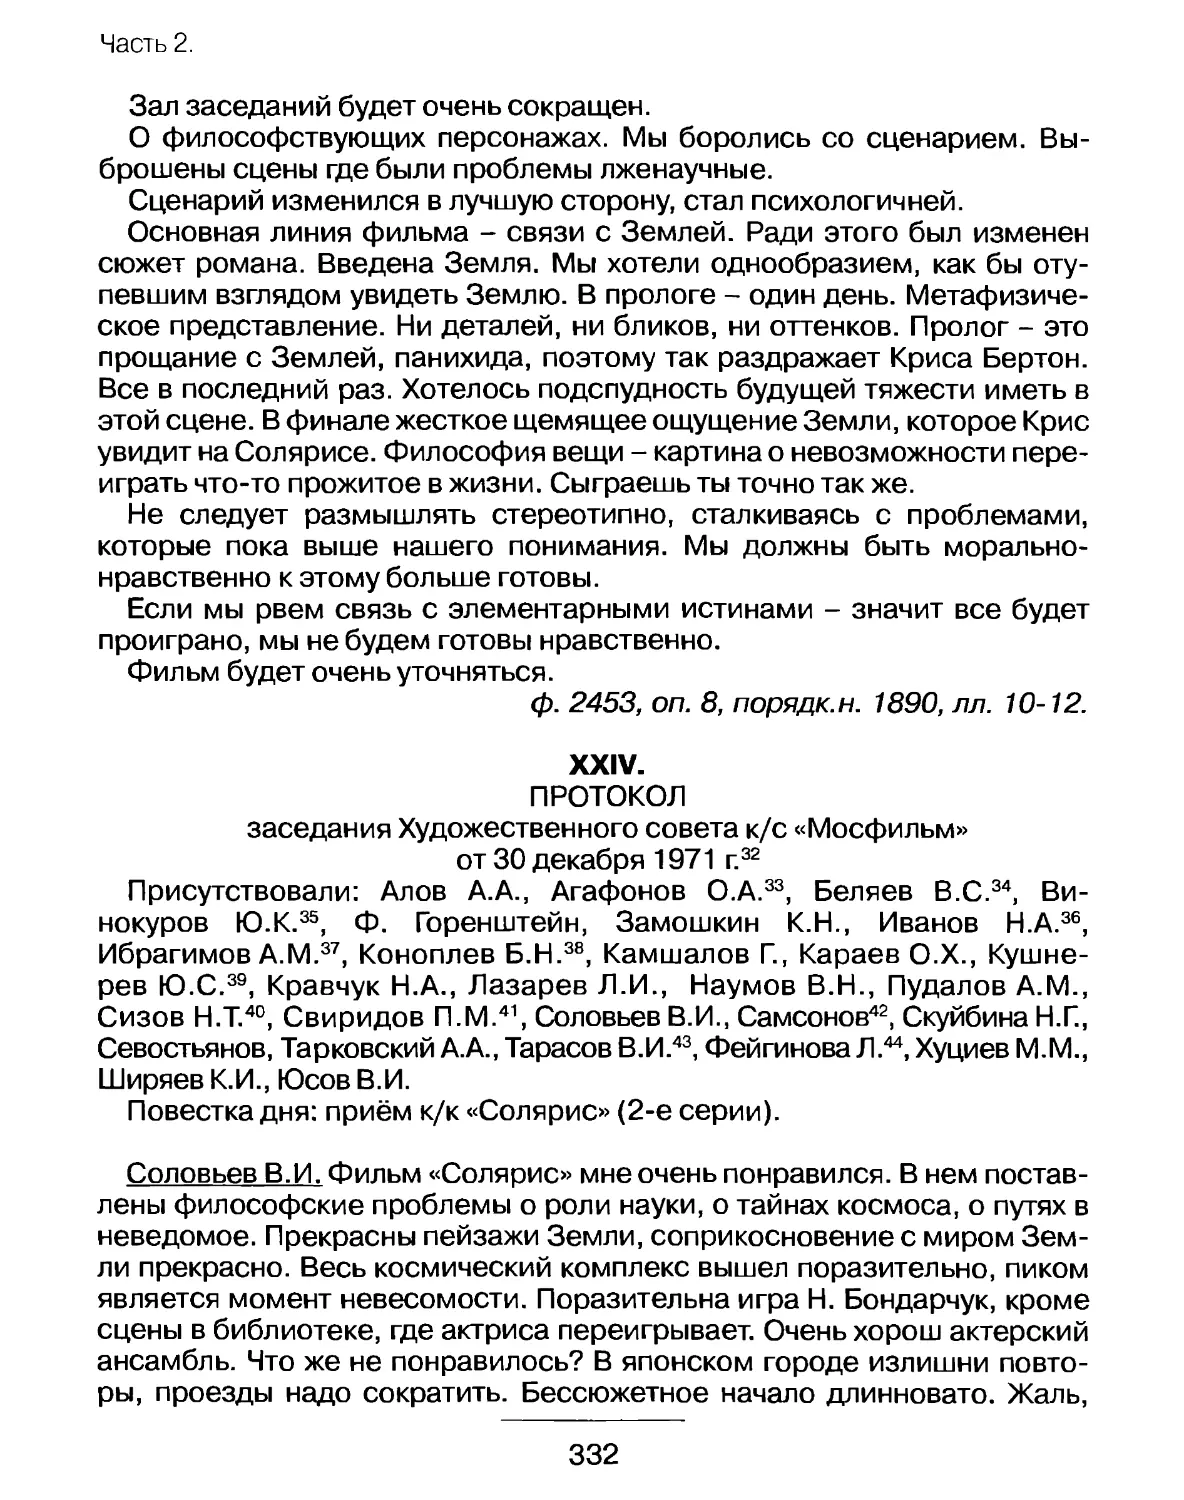 Протокол заседания Художественного совета к/с «Мосфильм» от 30 декабря 1971г.